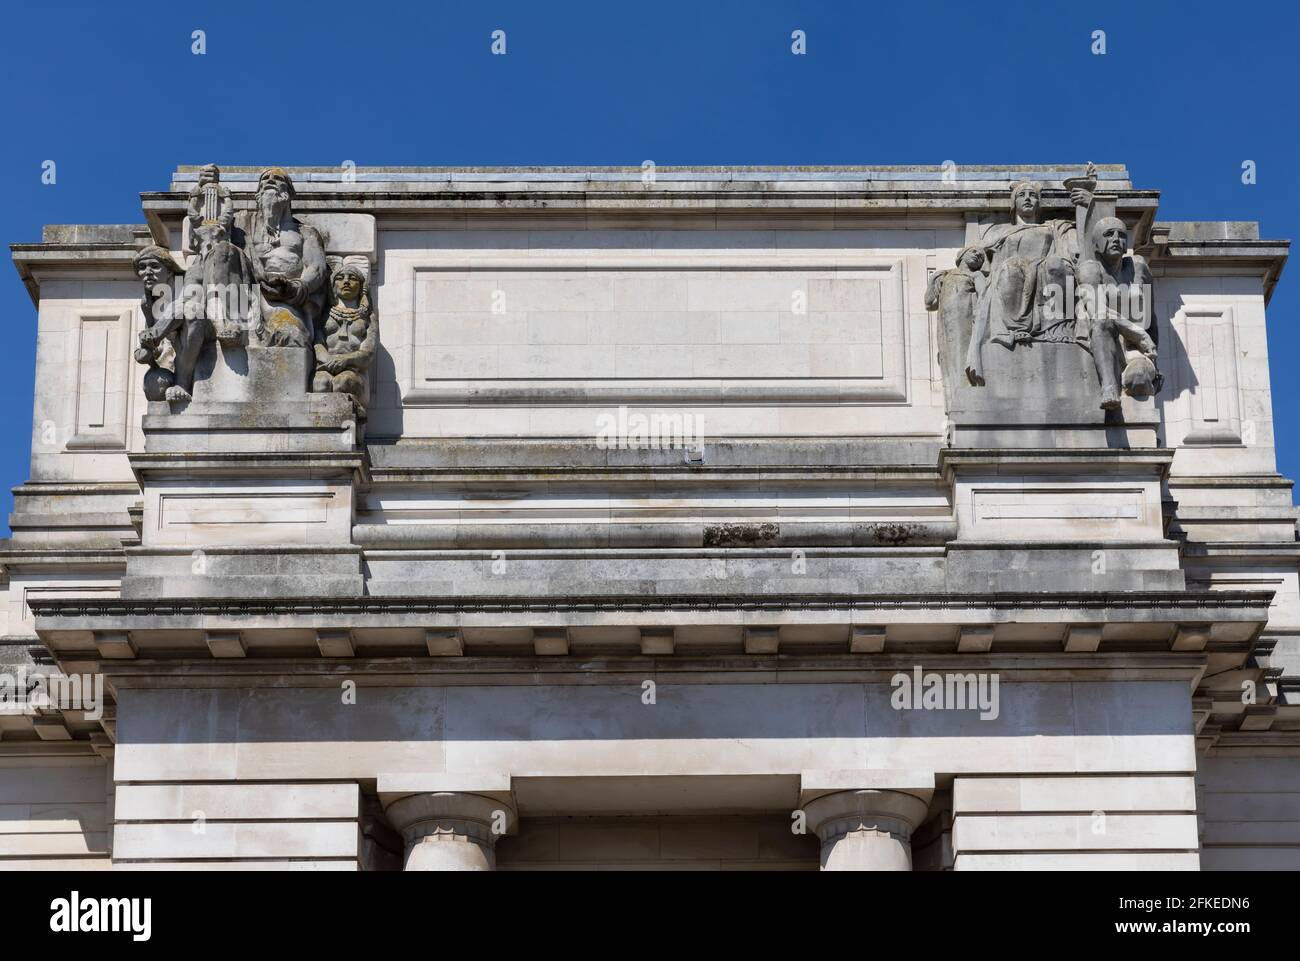 Sculptures architecturales sur le Musée national de Cardiff représentant la période préhistorique (à gauche) et la période classique (à droite). Cardiff, pays de galles, Royaume-Uni Banque D'Images